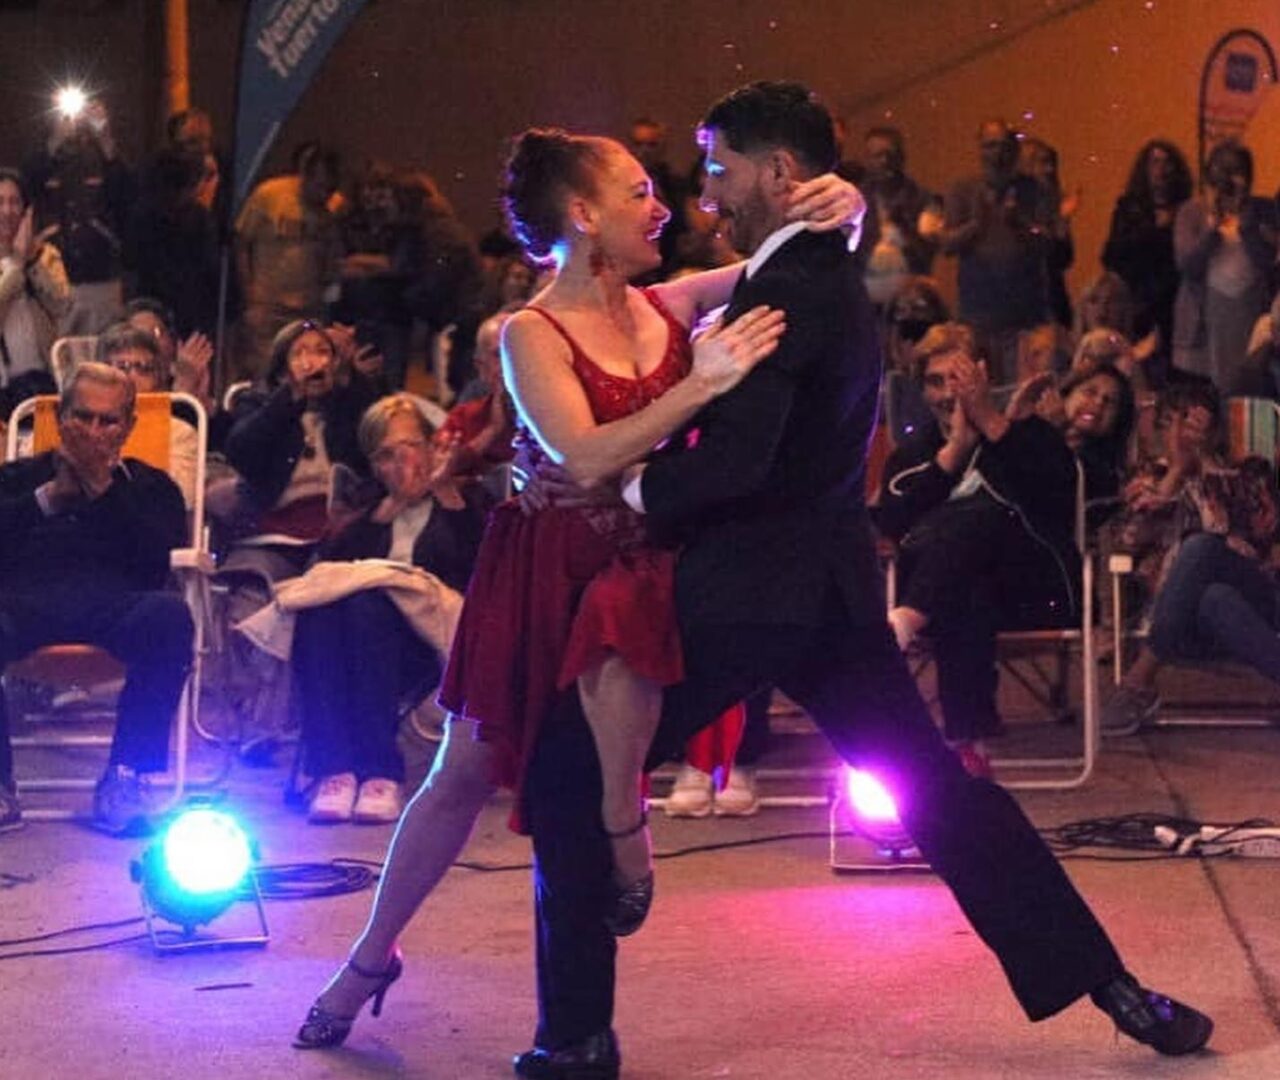 Especial tango de “Nuestros Patios Susurran” en el Parque Español